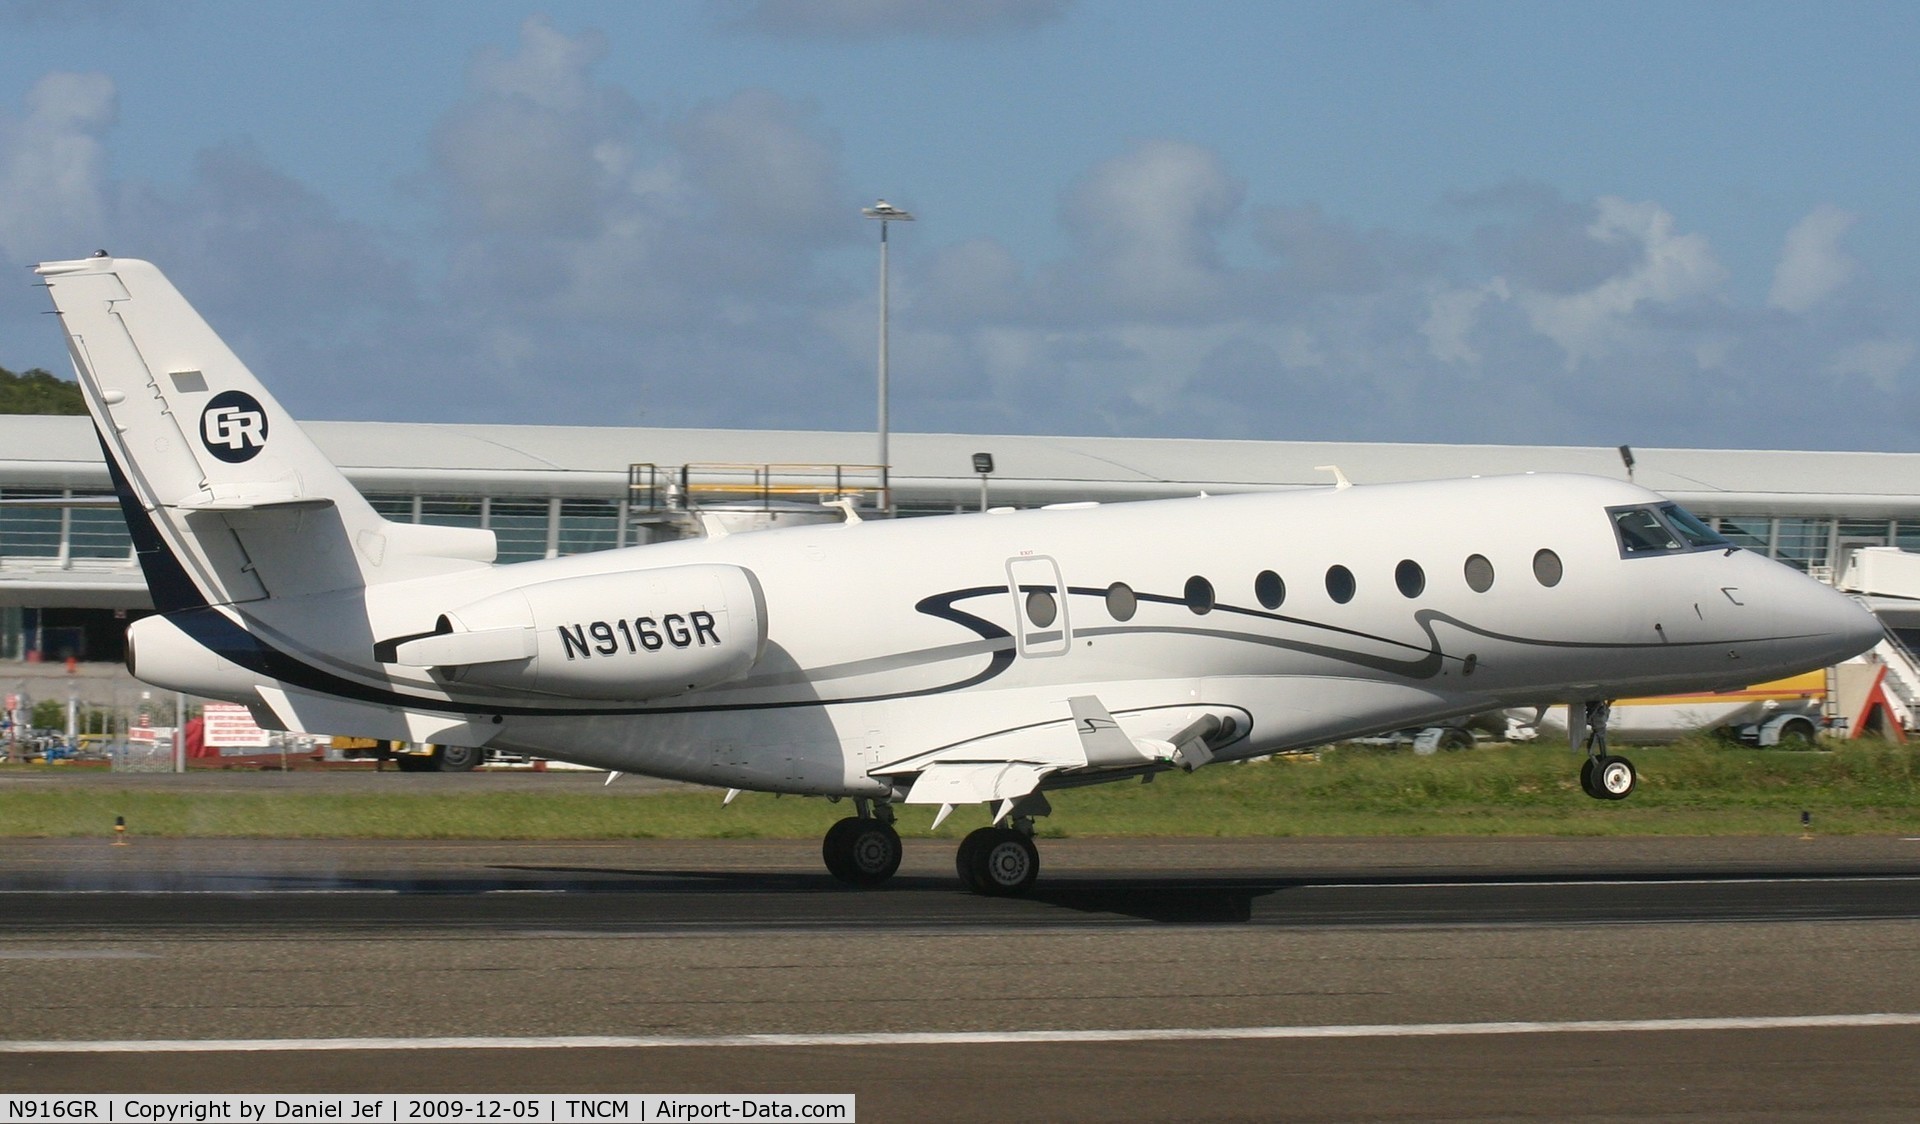 N916GR, 2005 Israel Aircraft Industries Gulfstream 200 C/N 126, N916GR landing at St Maarten